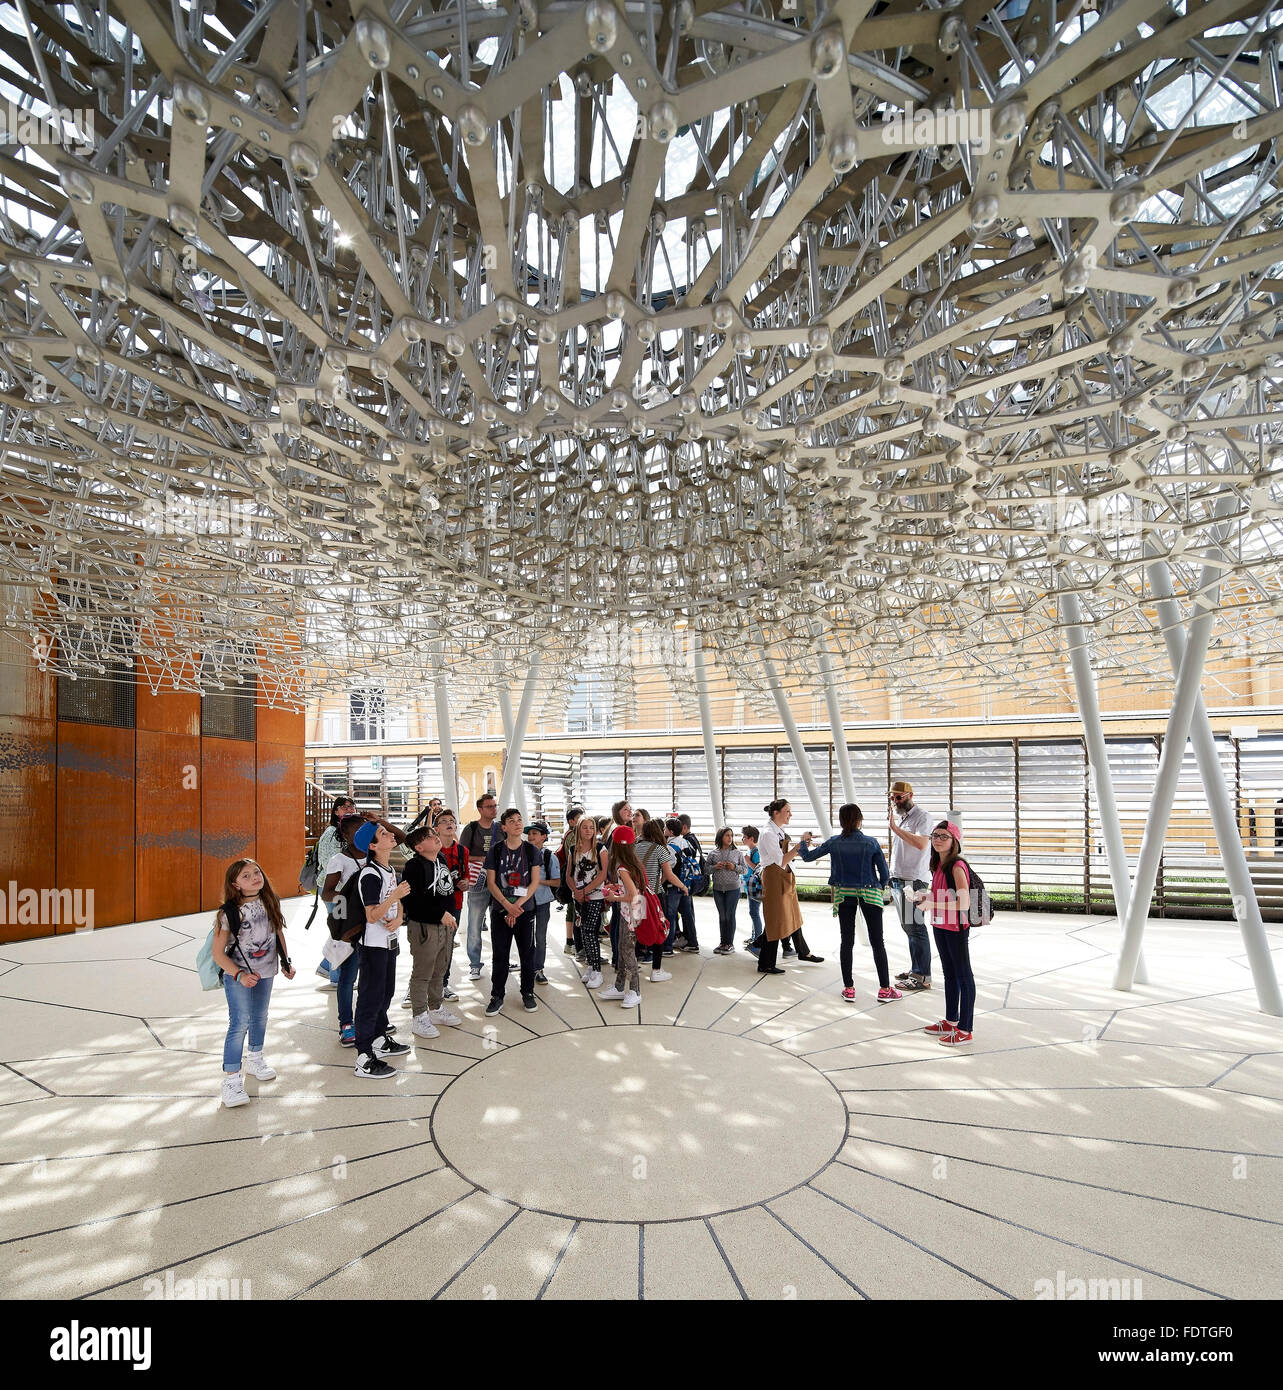 Terrasse avec les visiteurs sous la structure de défaisance. L'Expo Milan 2015, UK Pavilion, Milan, Italie. Architecte : Wolfgang Buttress, 2015. Banque D'Images